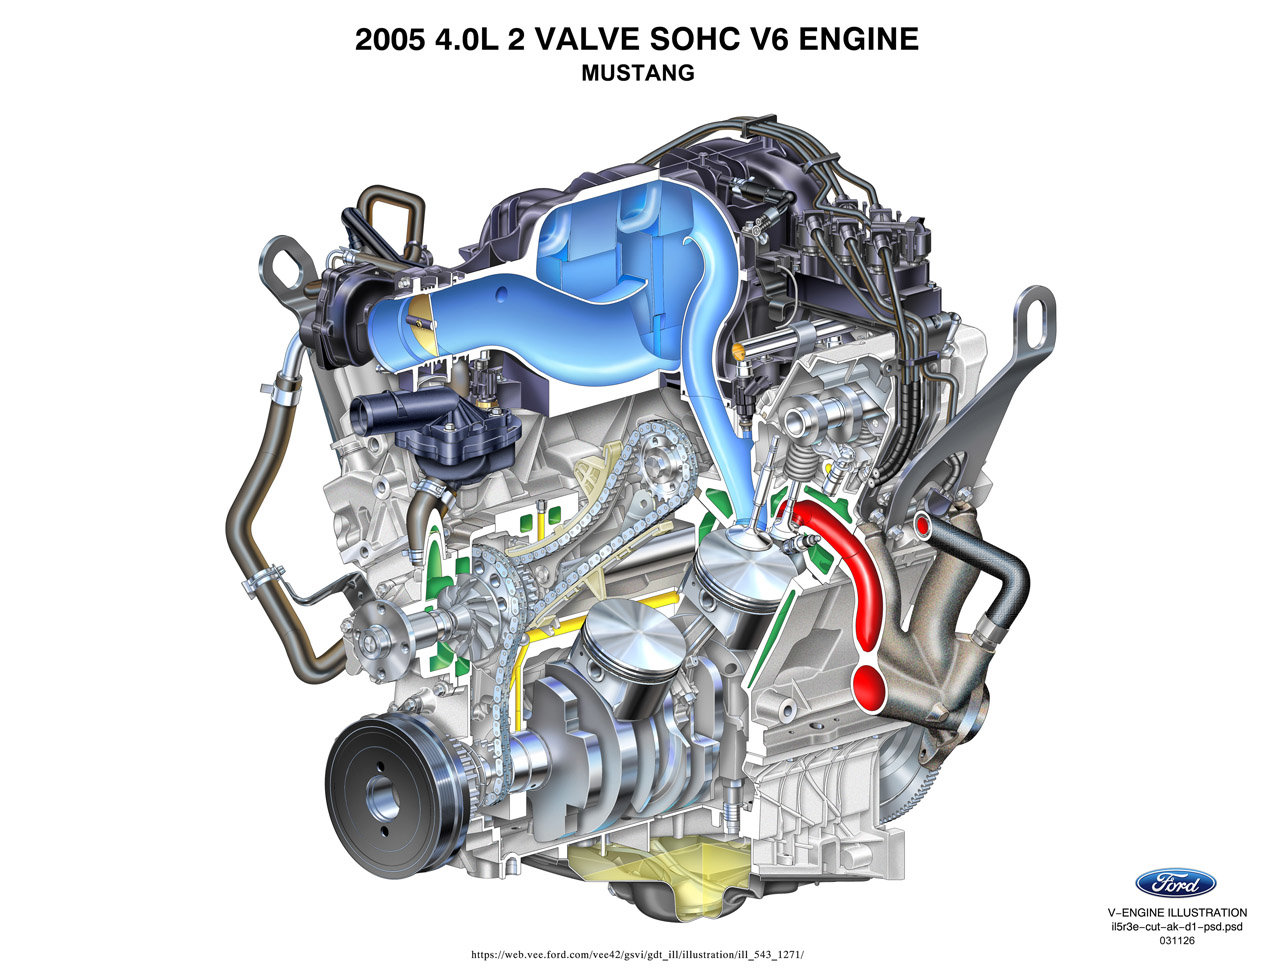 2005 V6 engine